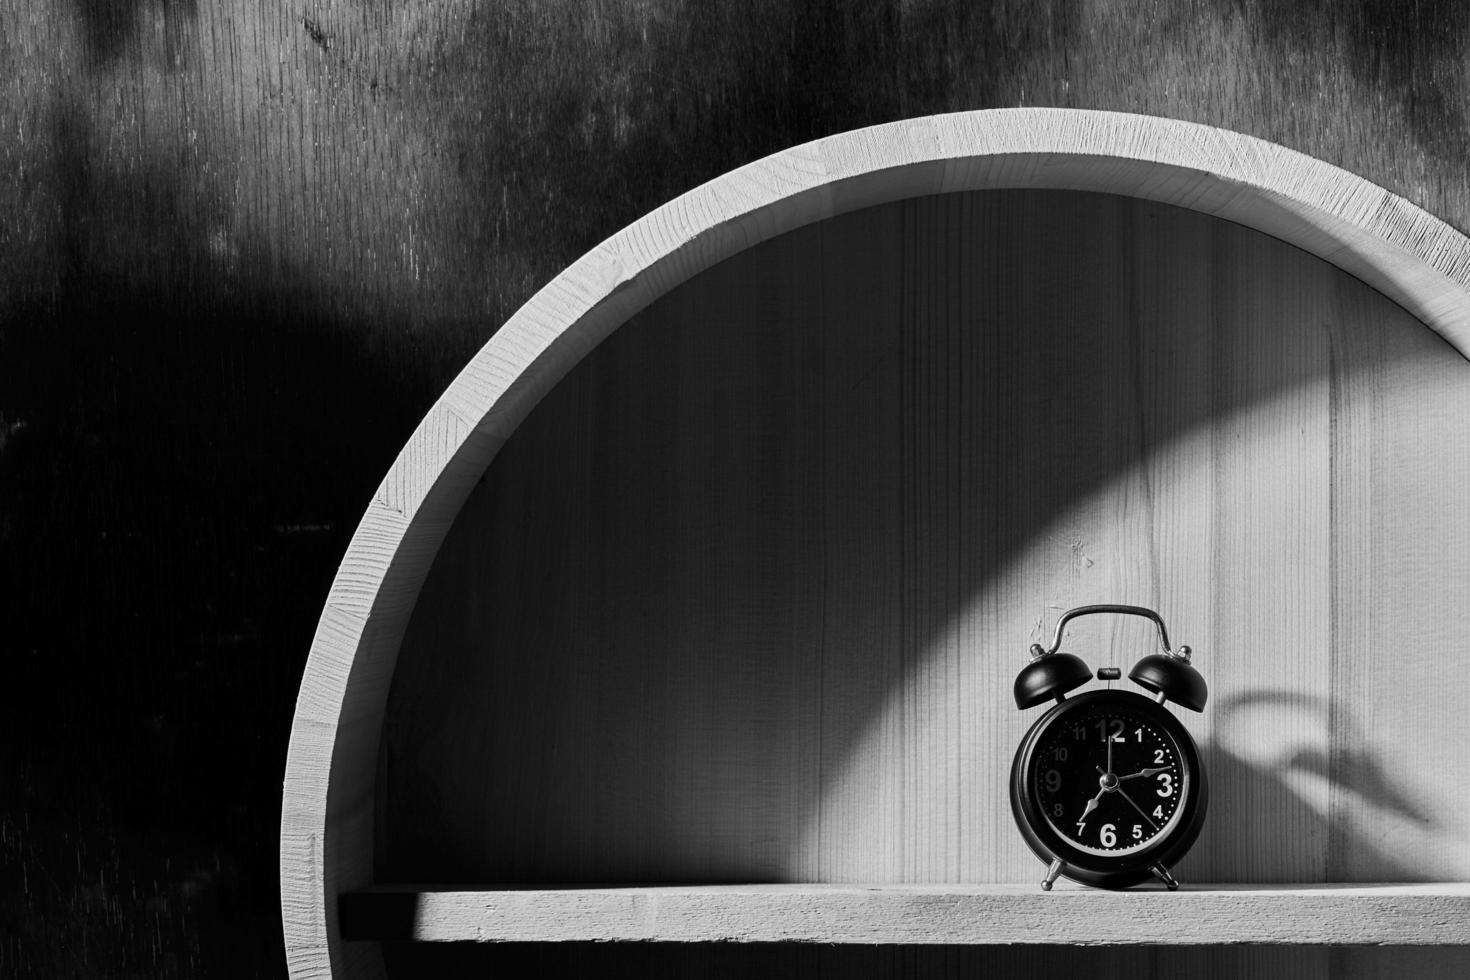 blanco y negro de un reloj despertador foto